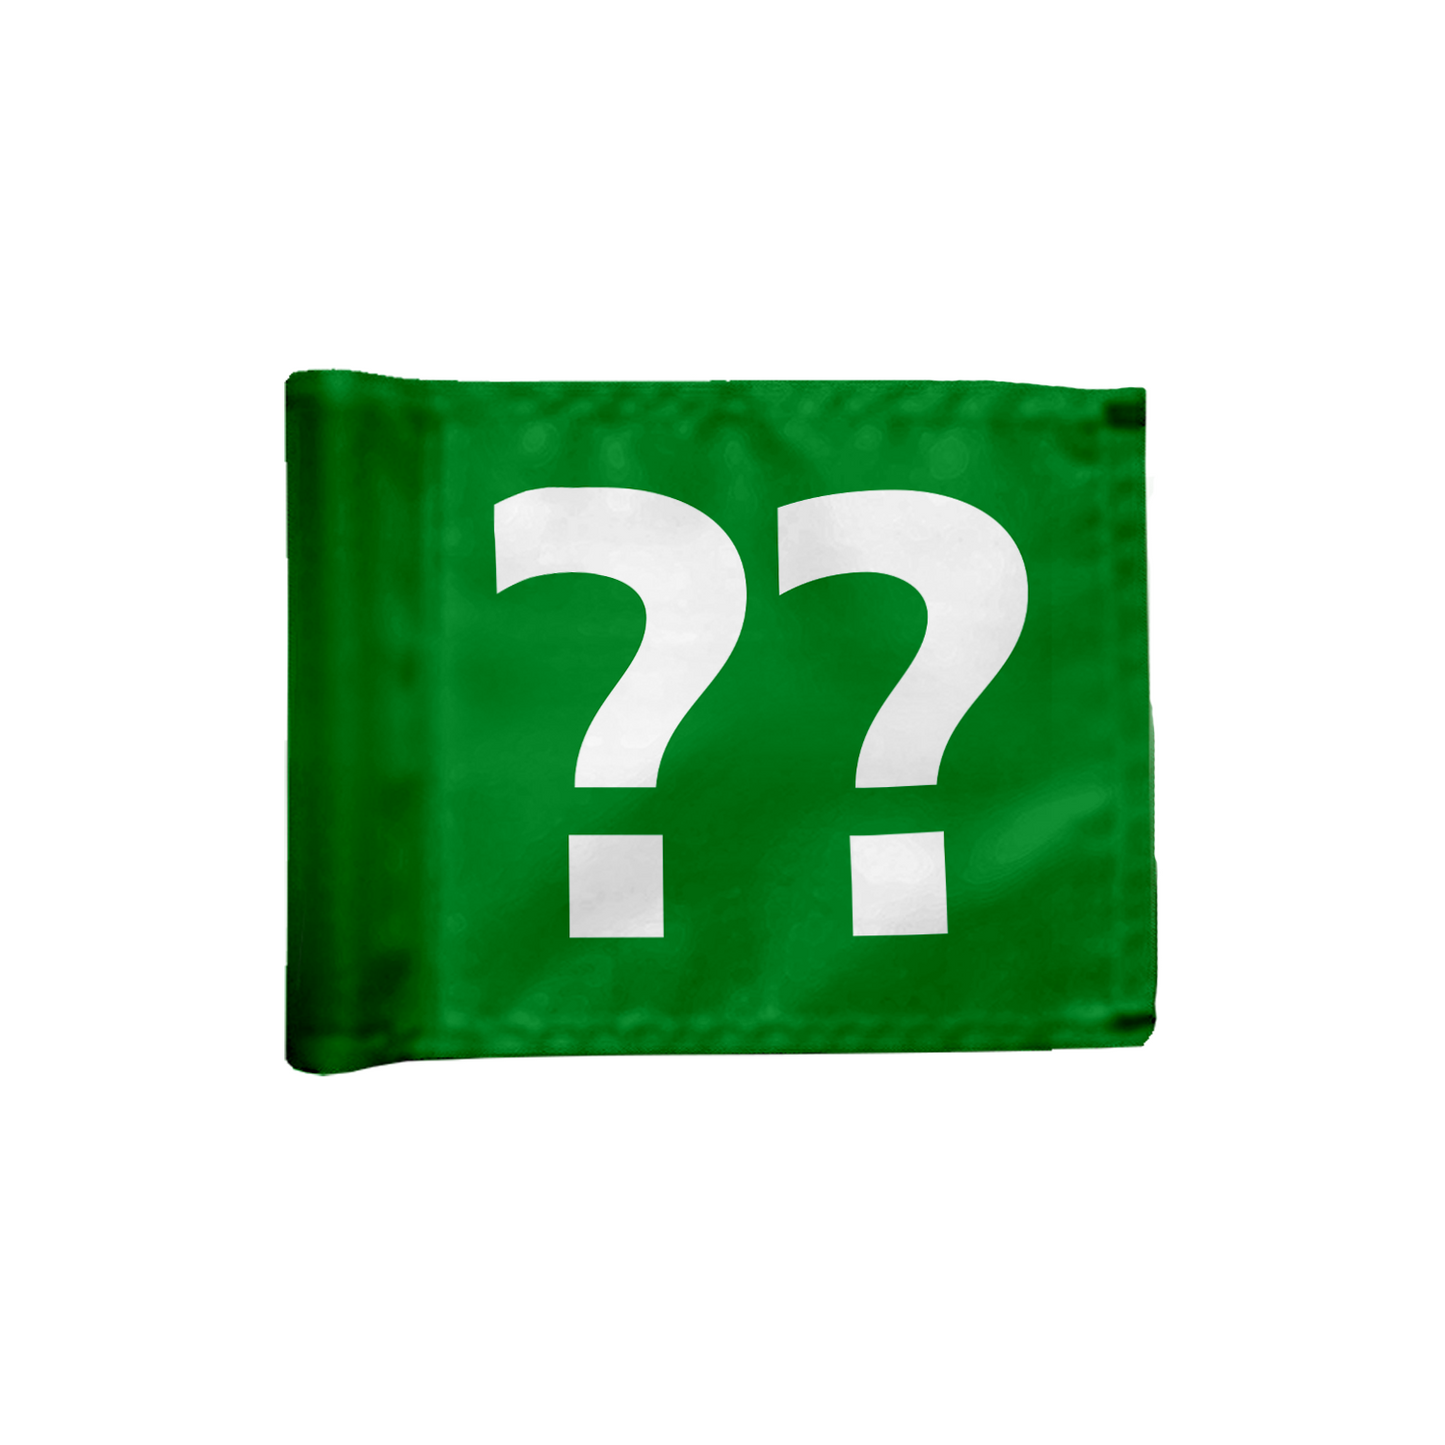 Stykvis puttinggreen flag enkeltsidet i grøn med valgfrit hulnummer, 200 gram flagdug